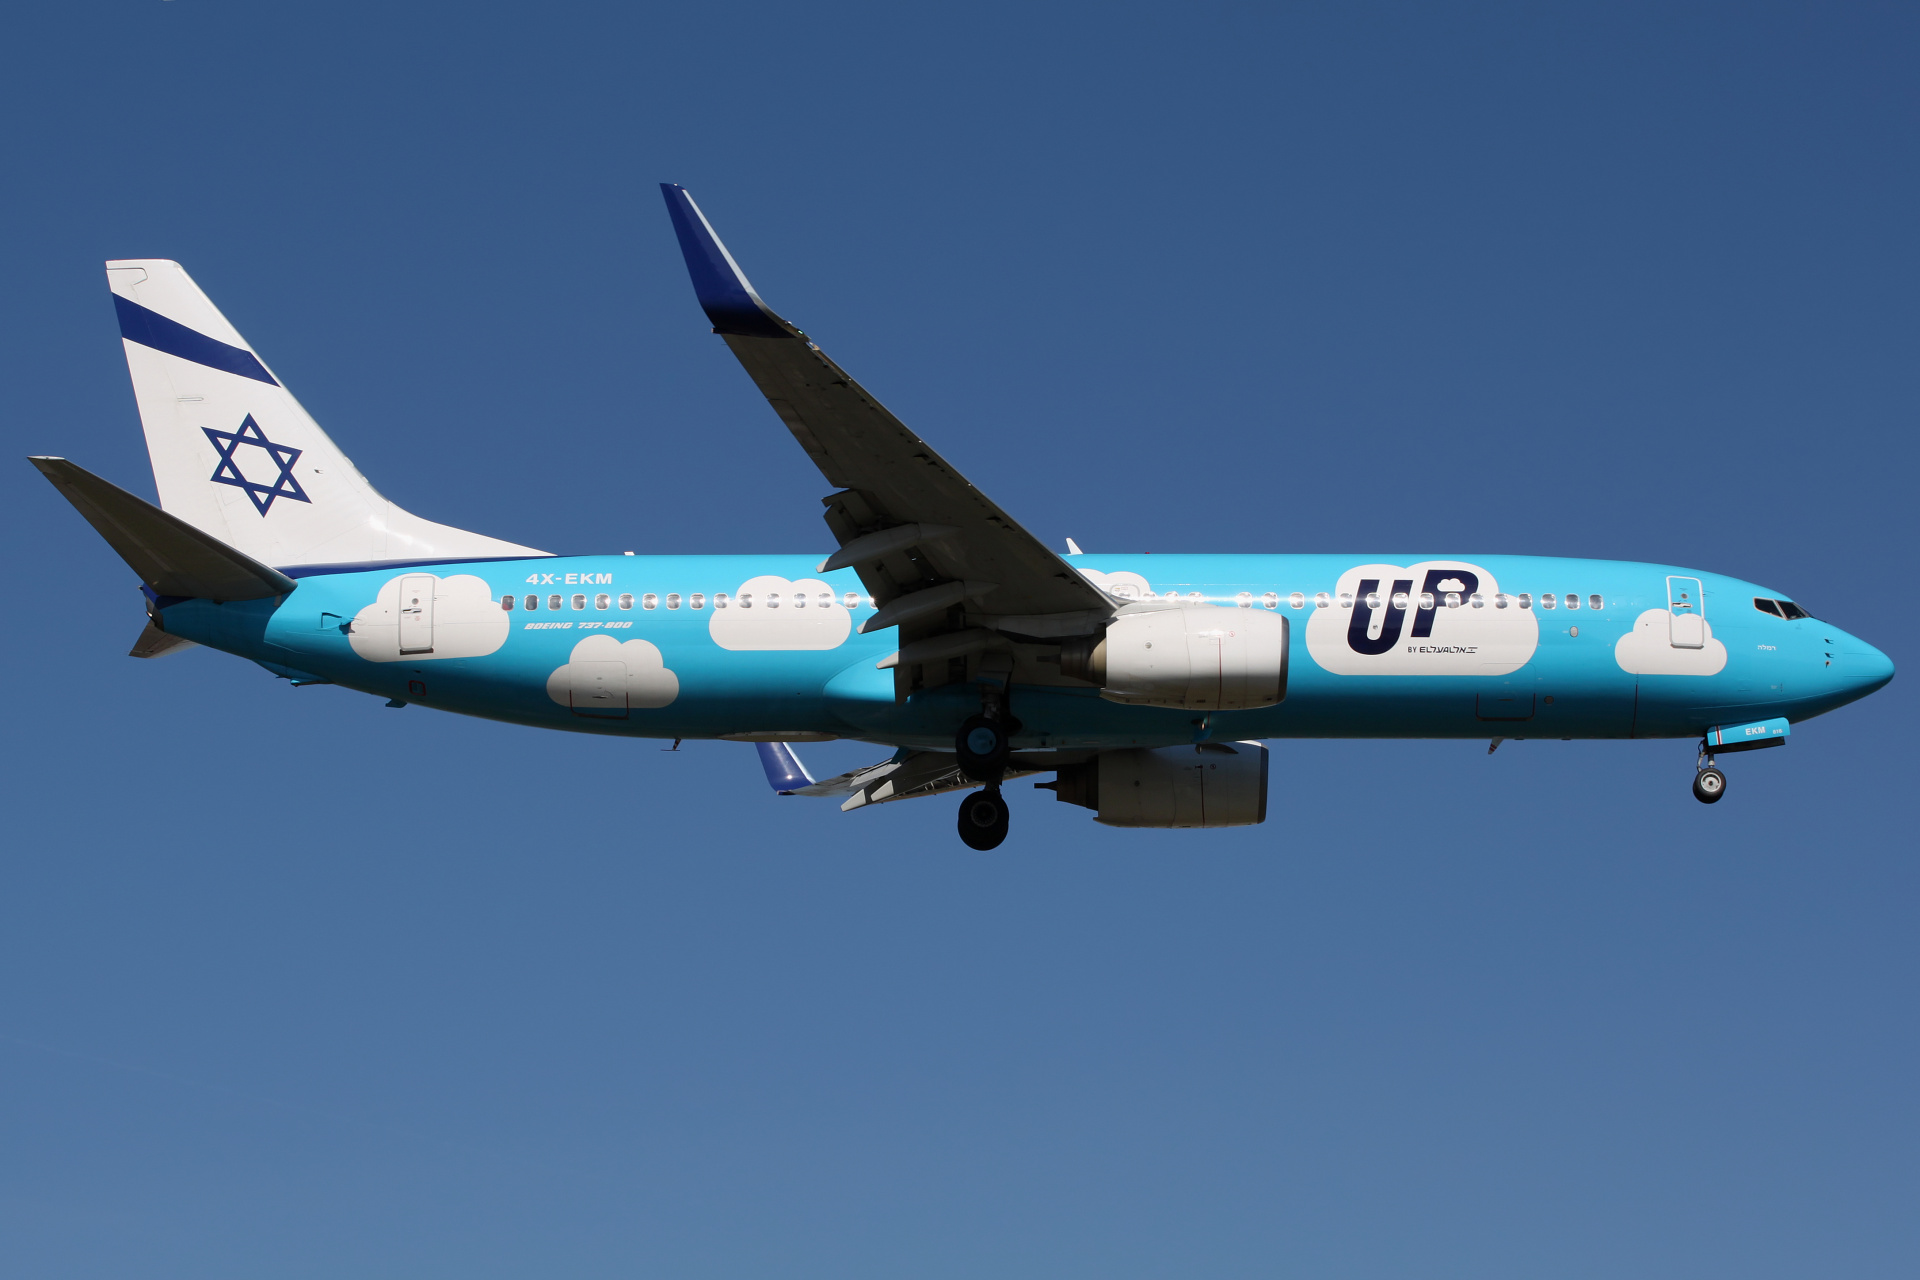 4X-EKM, UP by El Al (Aircraft » EPWA Spotting » Boeing 737-800)